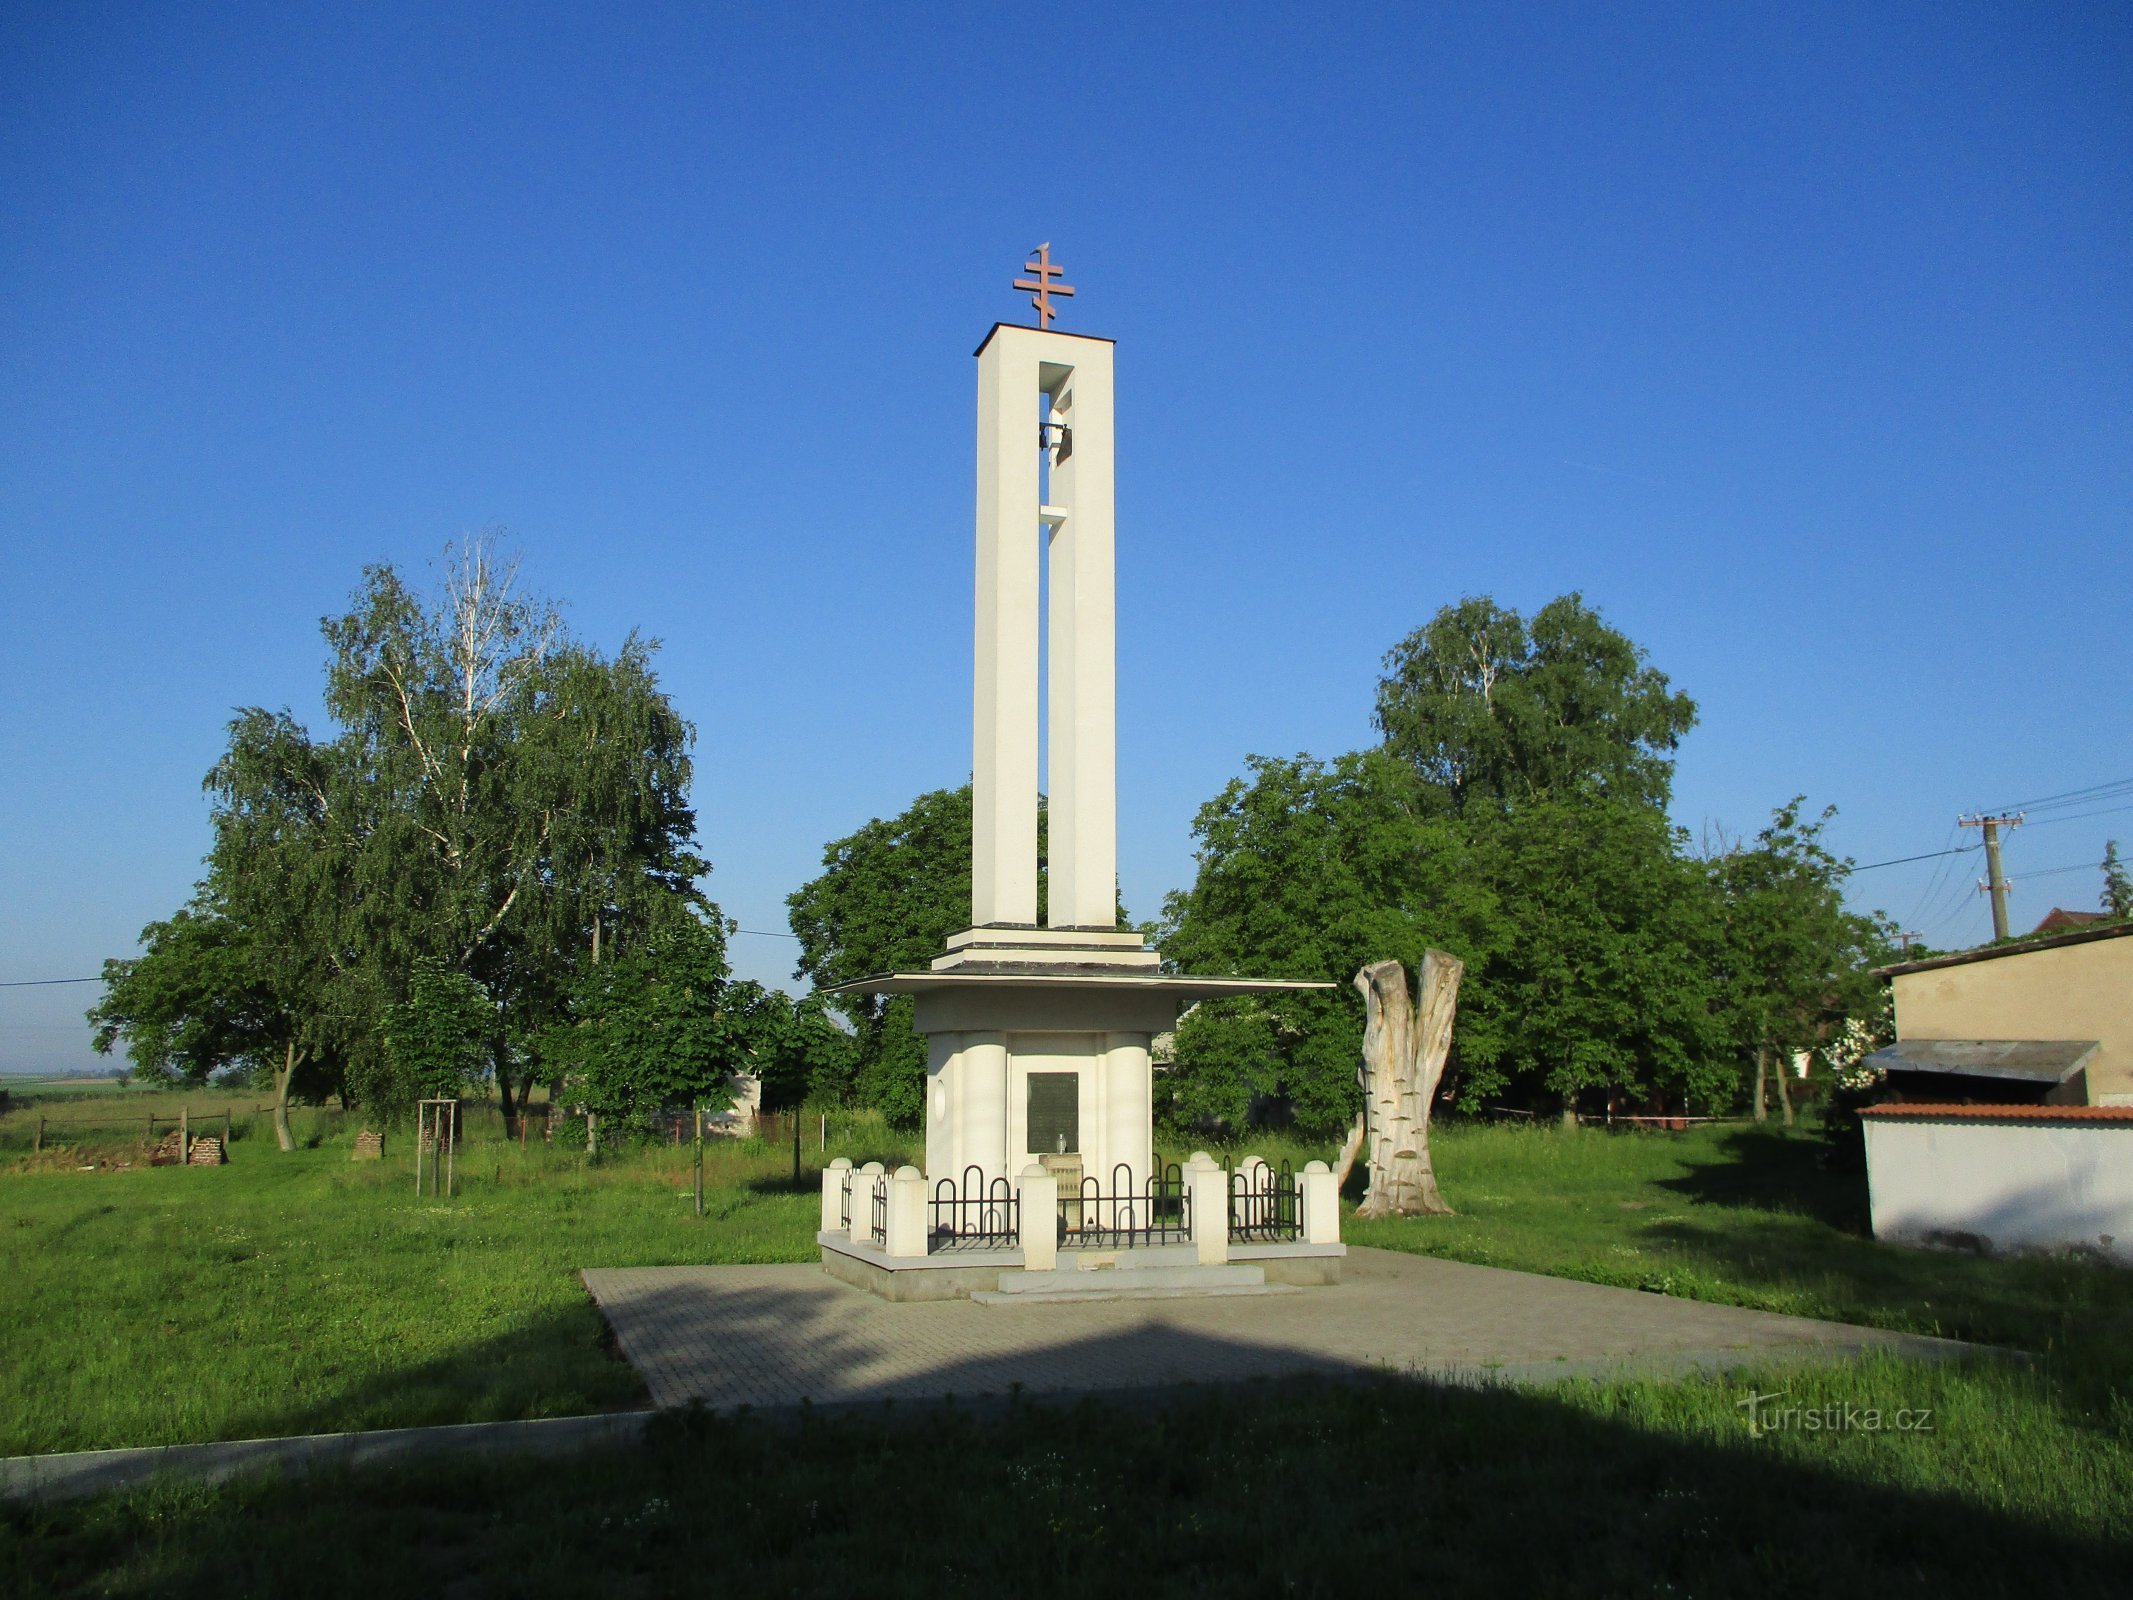 チェコスロバキア教会の鐘楼 (Praskačka)